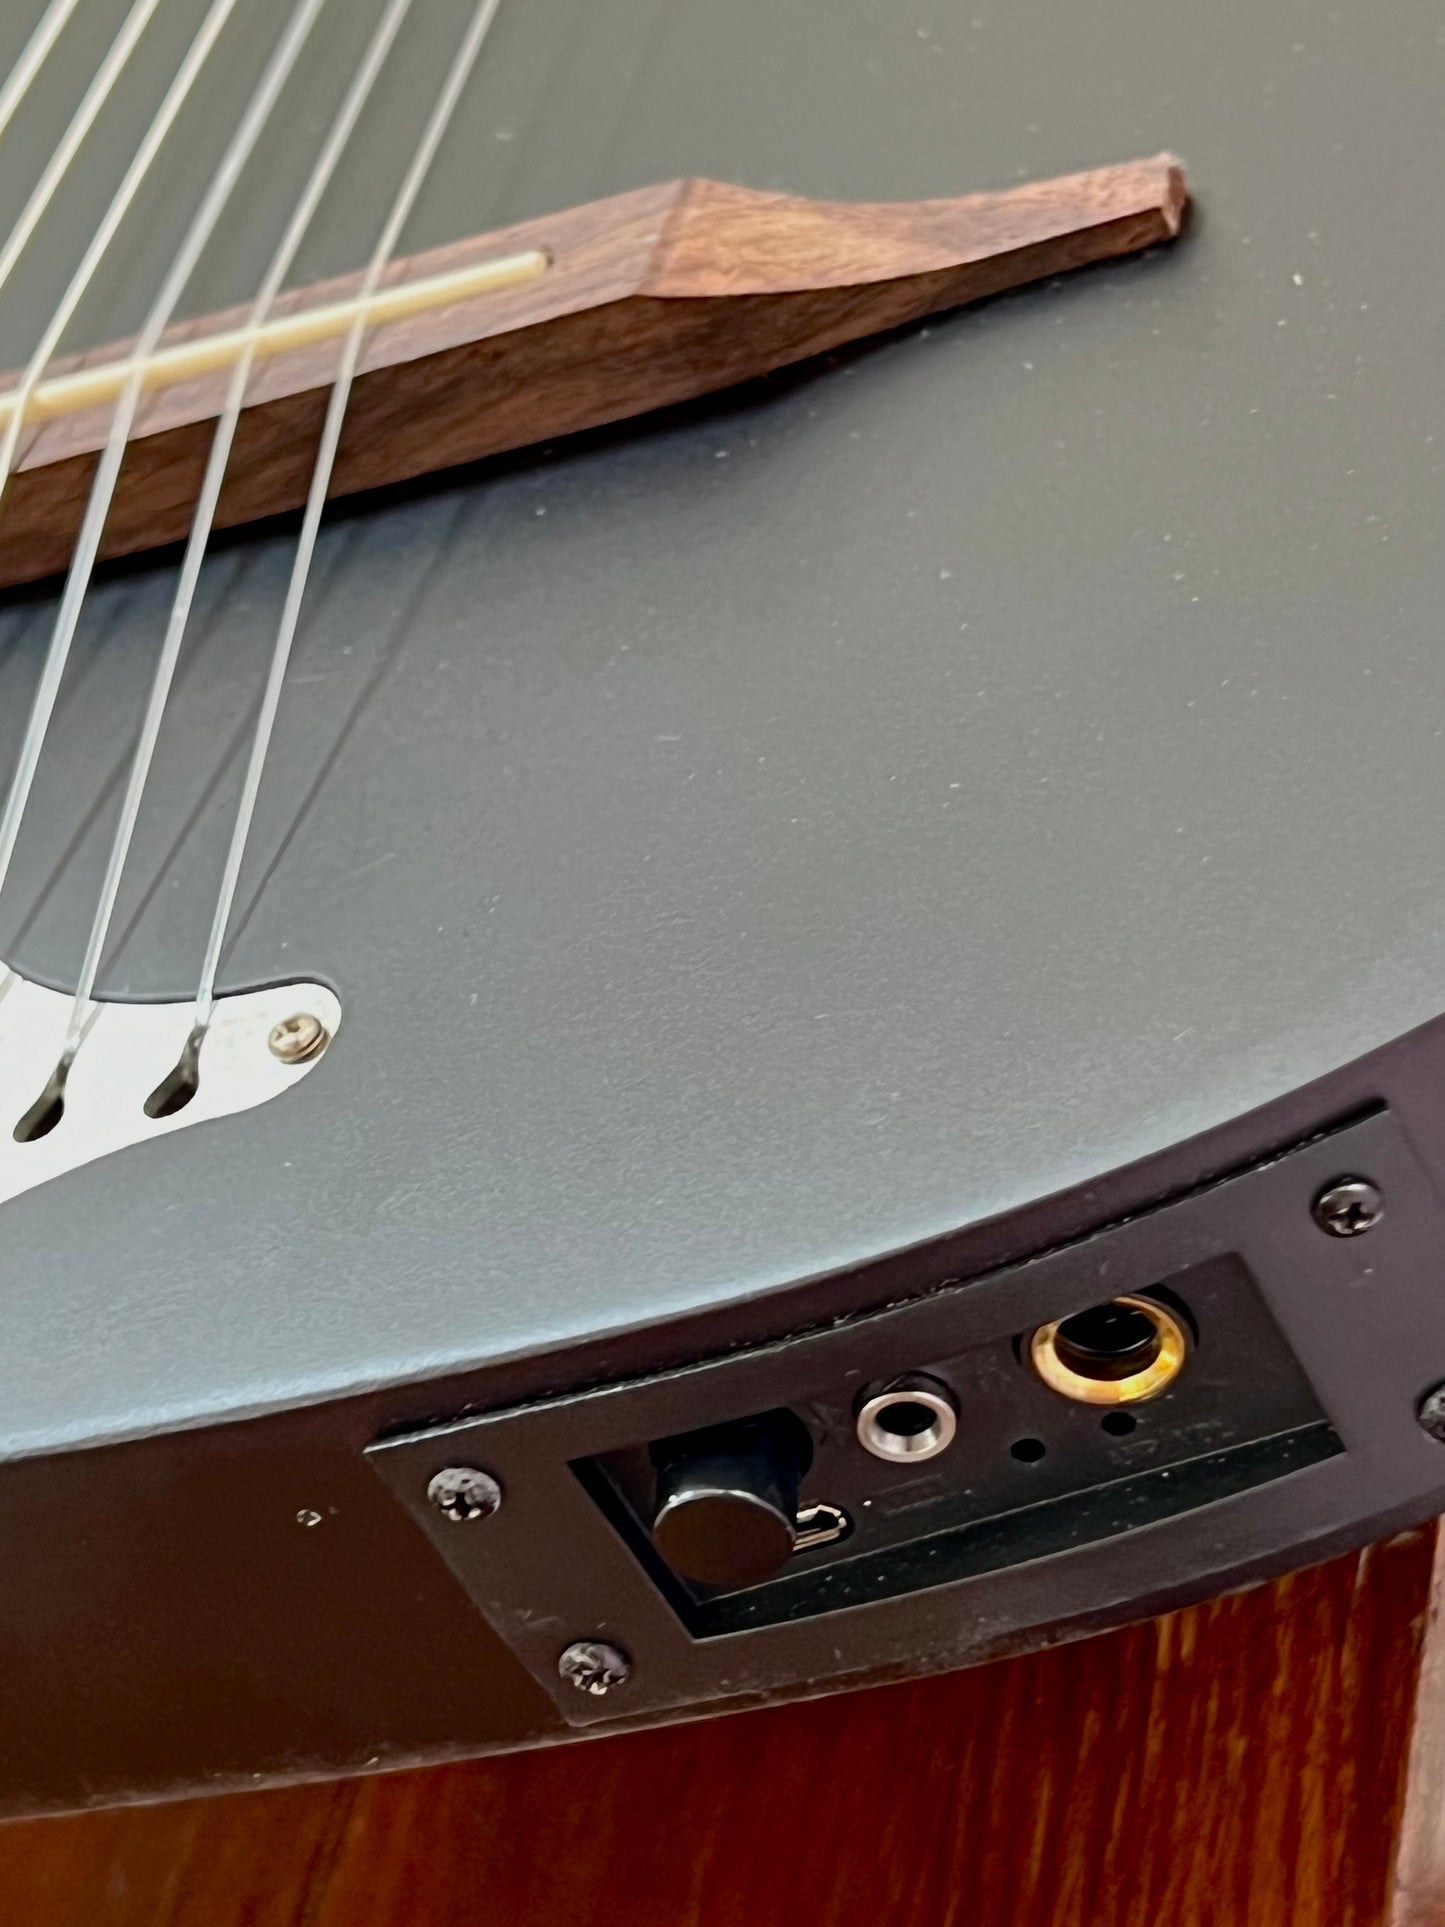 BugsGear silent steel string ģitāra ar piezo skaņas noņēmēju, bluetooth, izeju austiņām un soma